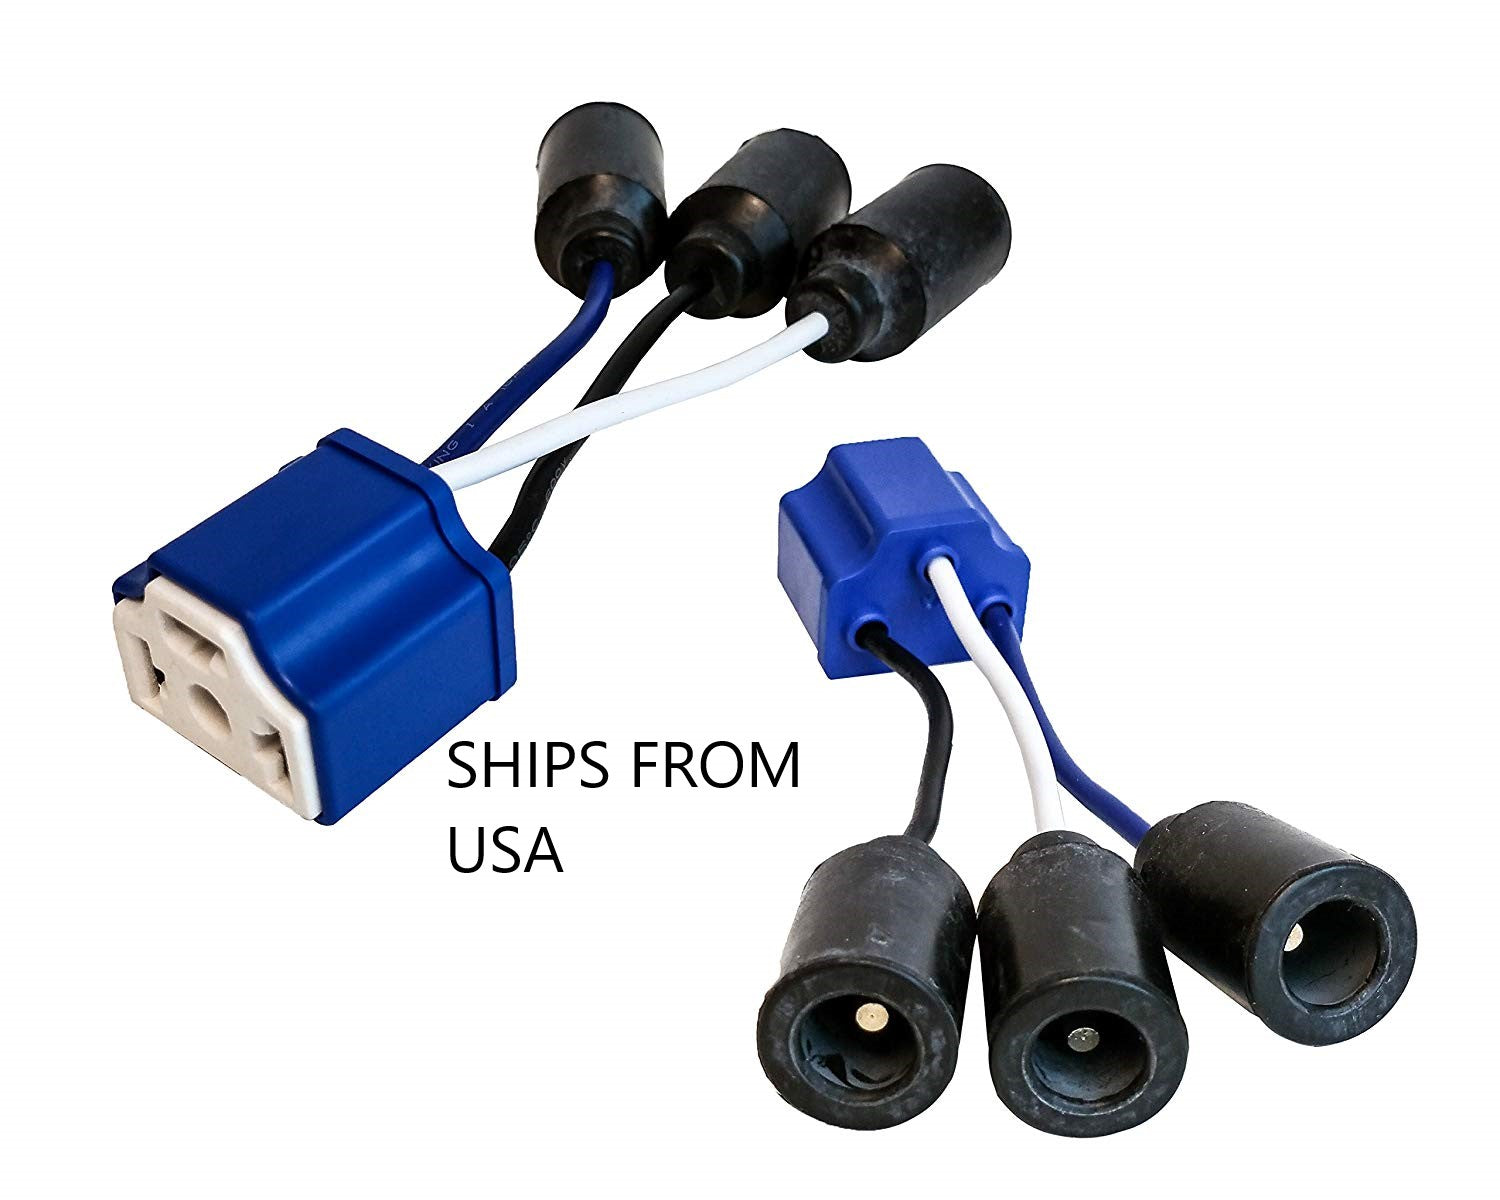 Scheinwerfer Adapter paar konvertieren 7 zivile Runde H4 LED Scheinwerfer  zu militärischen Lichter Plug and Play